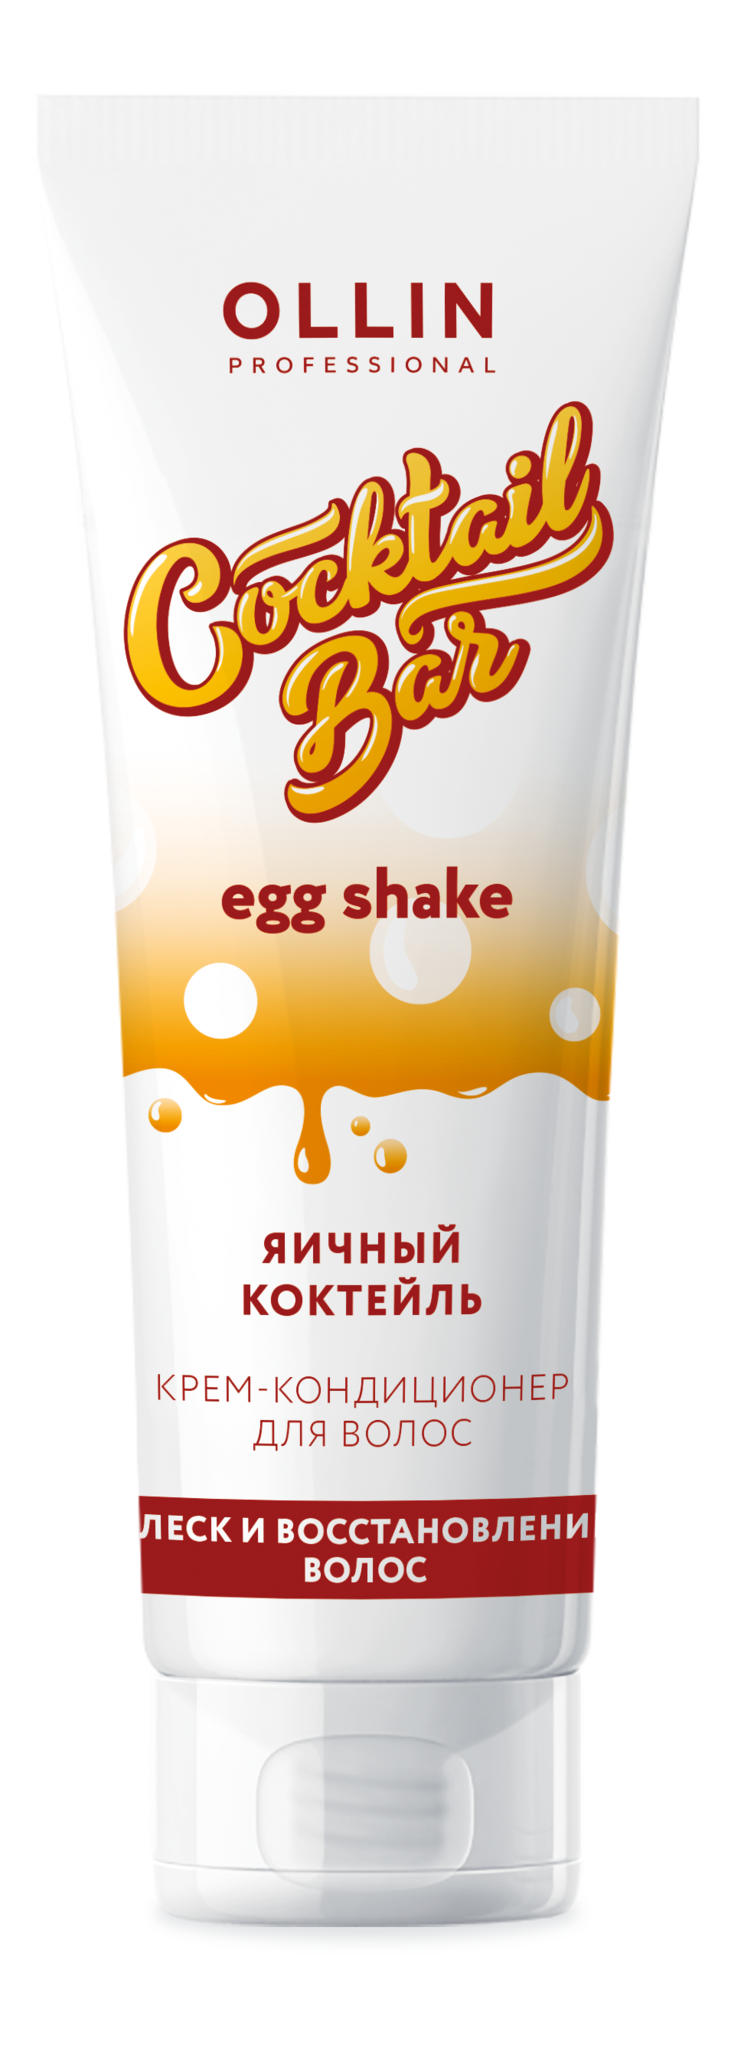 Ollin Cocktail Bar Egg Shake 61443